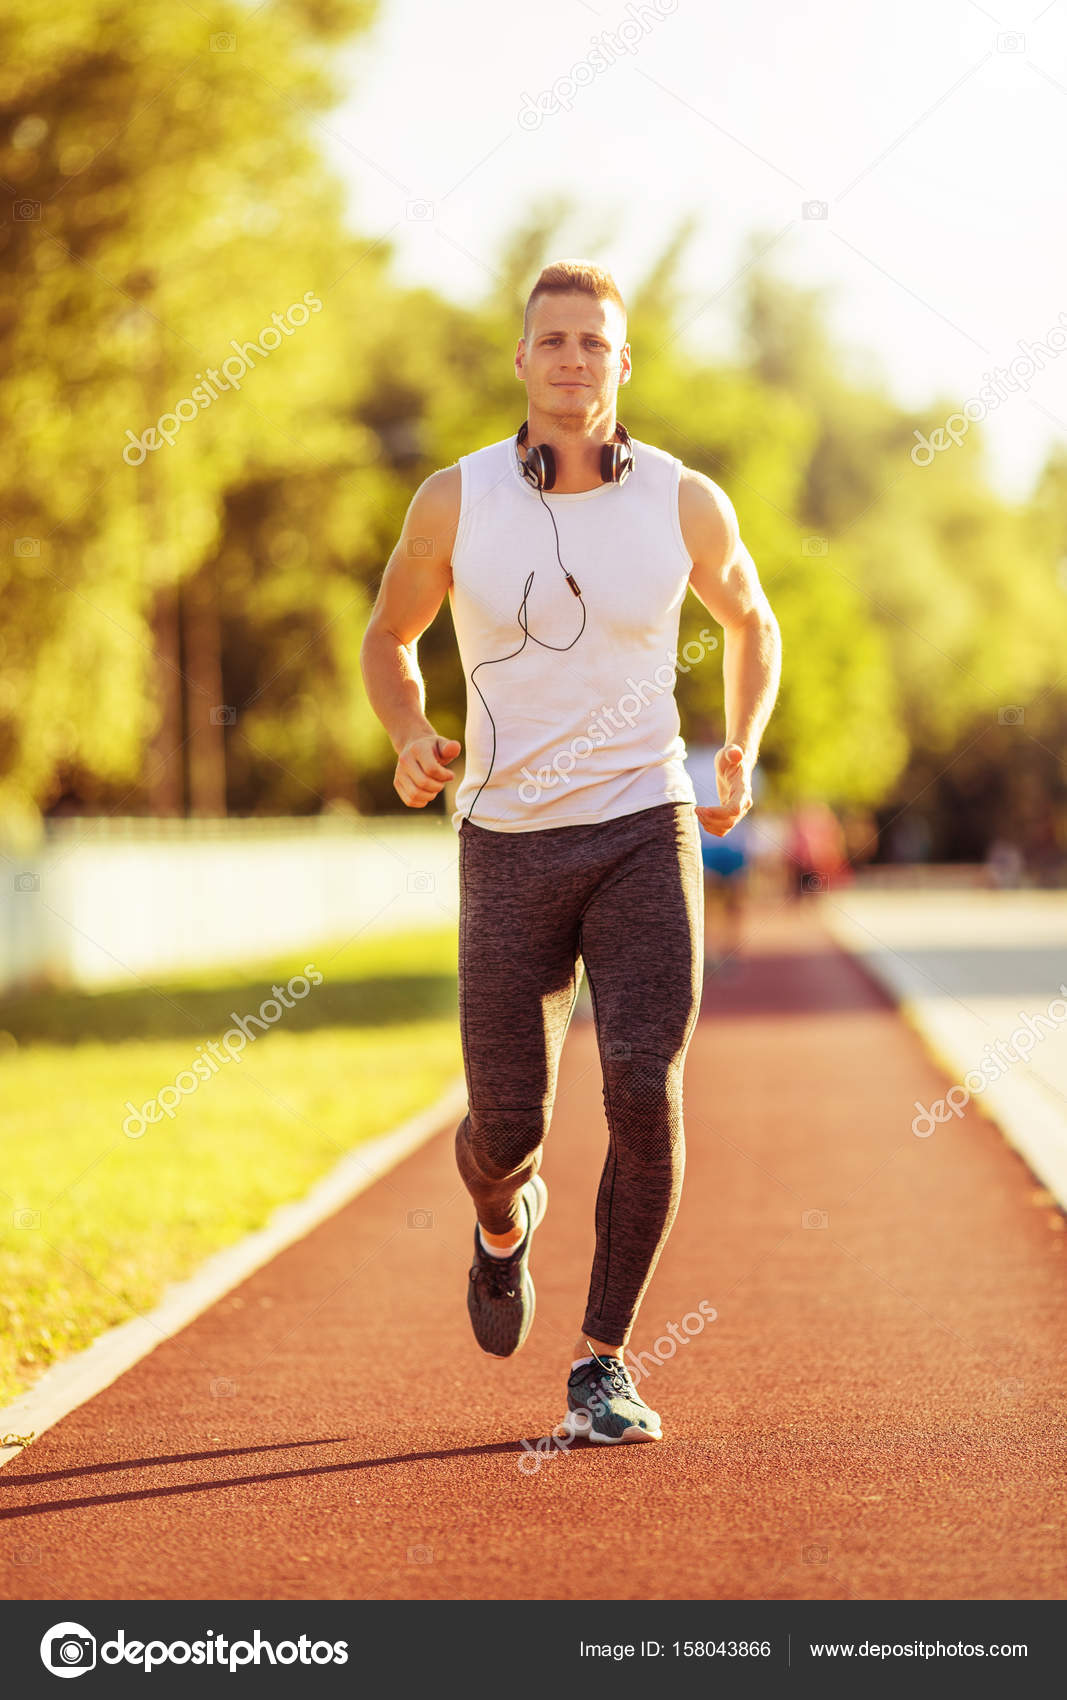 îmbunătățiți erecția prin jogging exerciții de ridicare a penisului